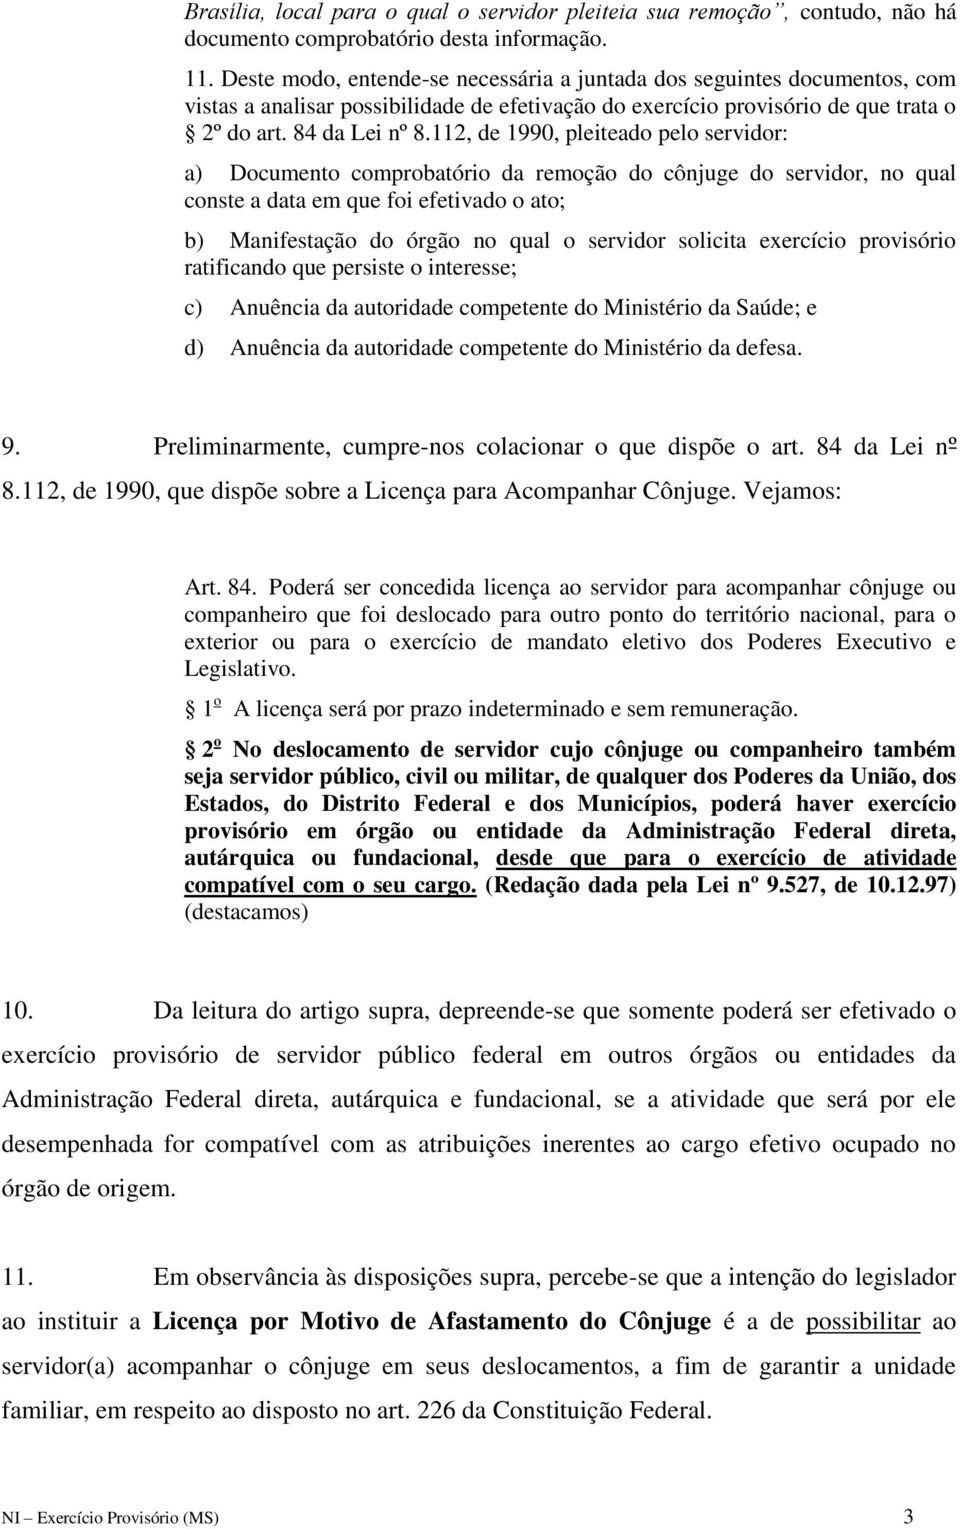 112, de 1990, pleiteado pelo servidor: a) Documento comprobatório da remoção do cônjuge do servidor, no qual conste a data em que foi efetivado o ato; b) Manifestação do órgão no qual o servidor